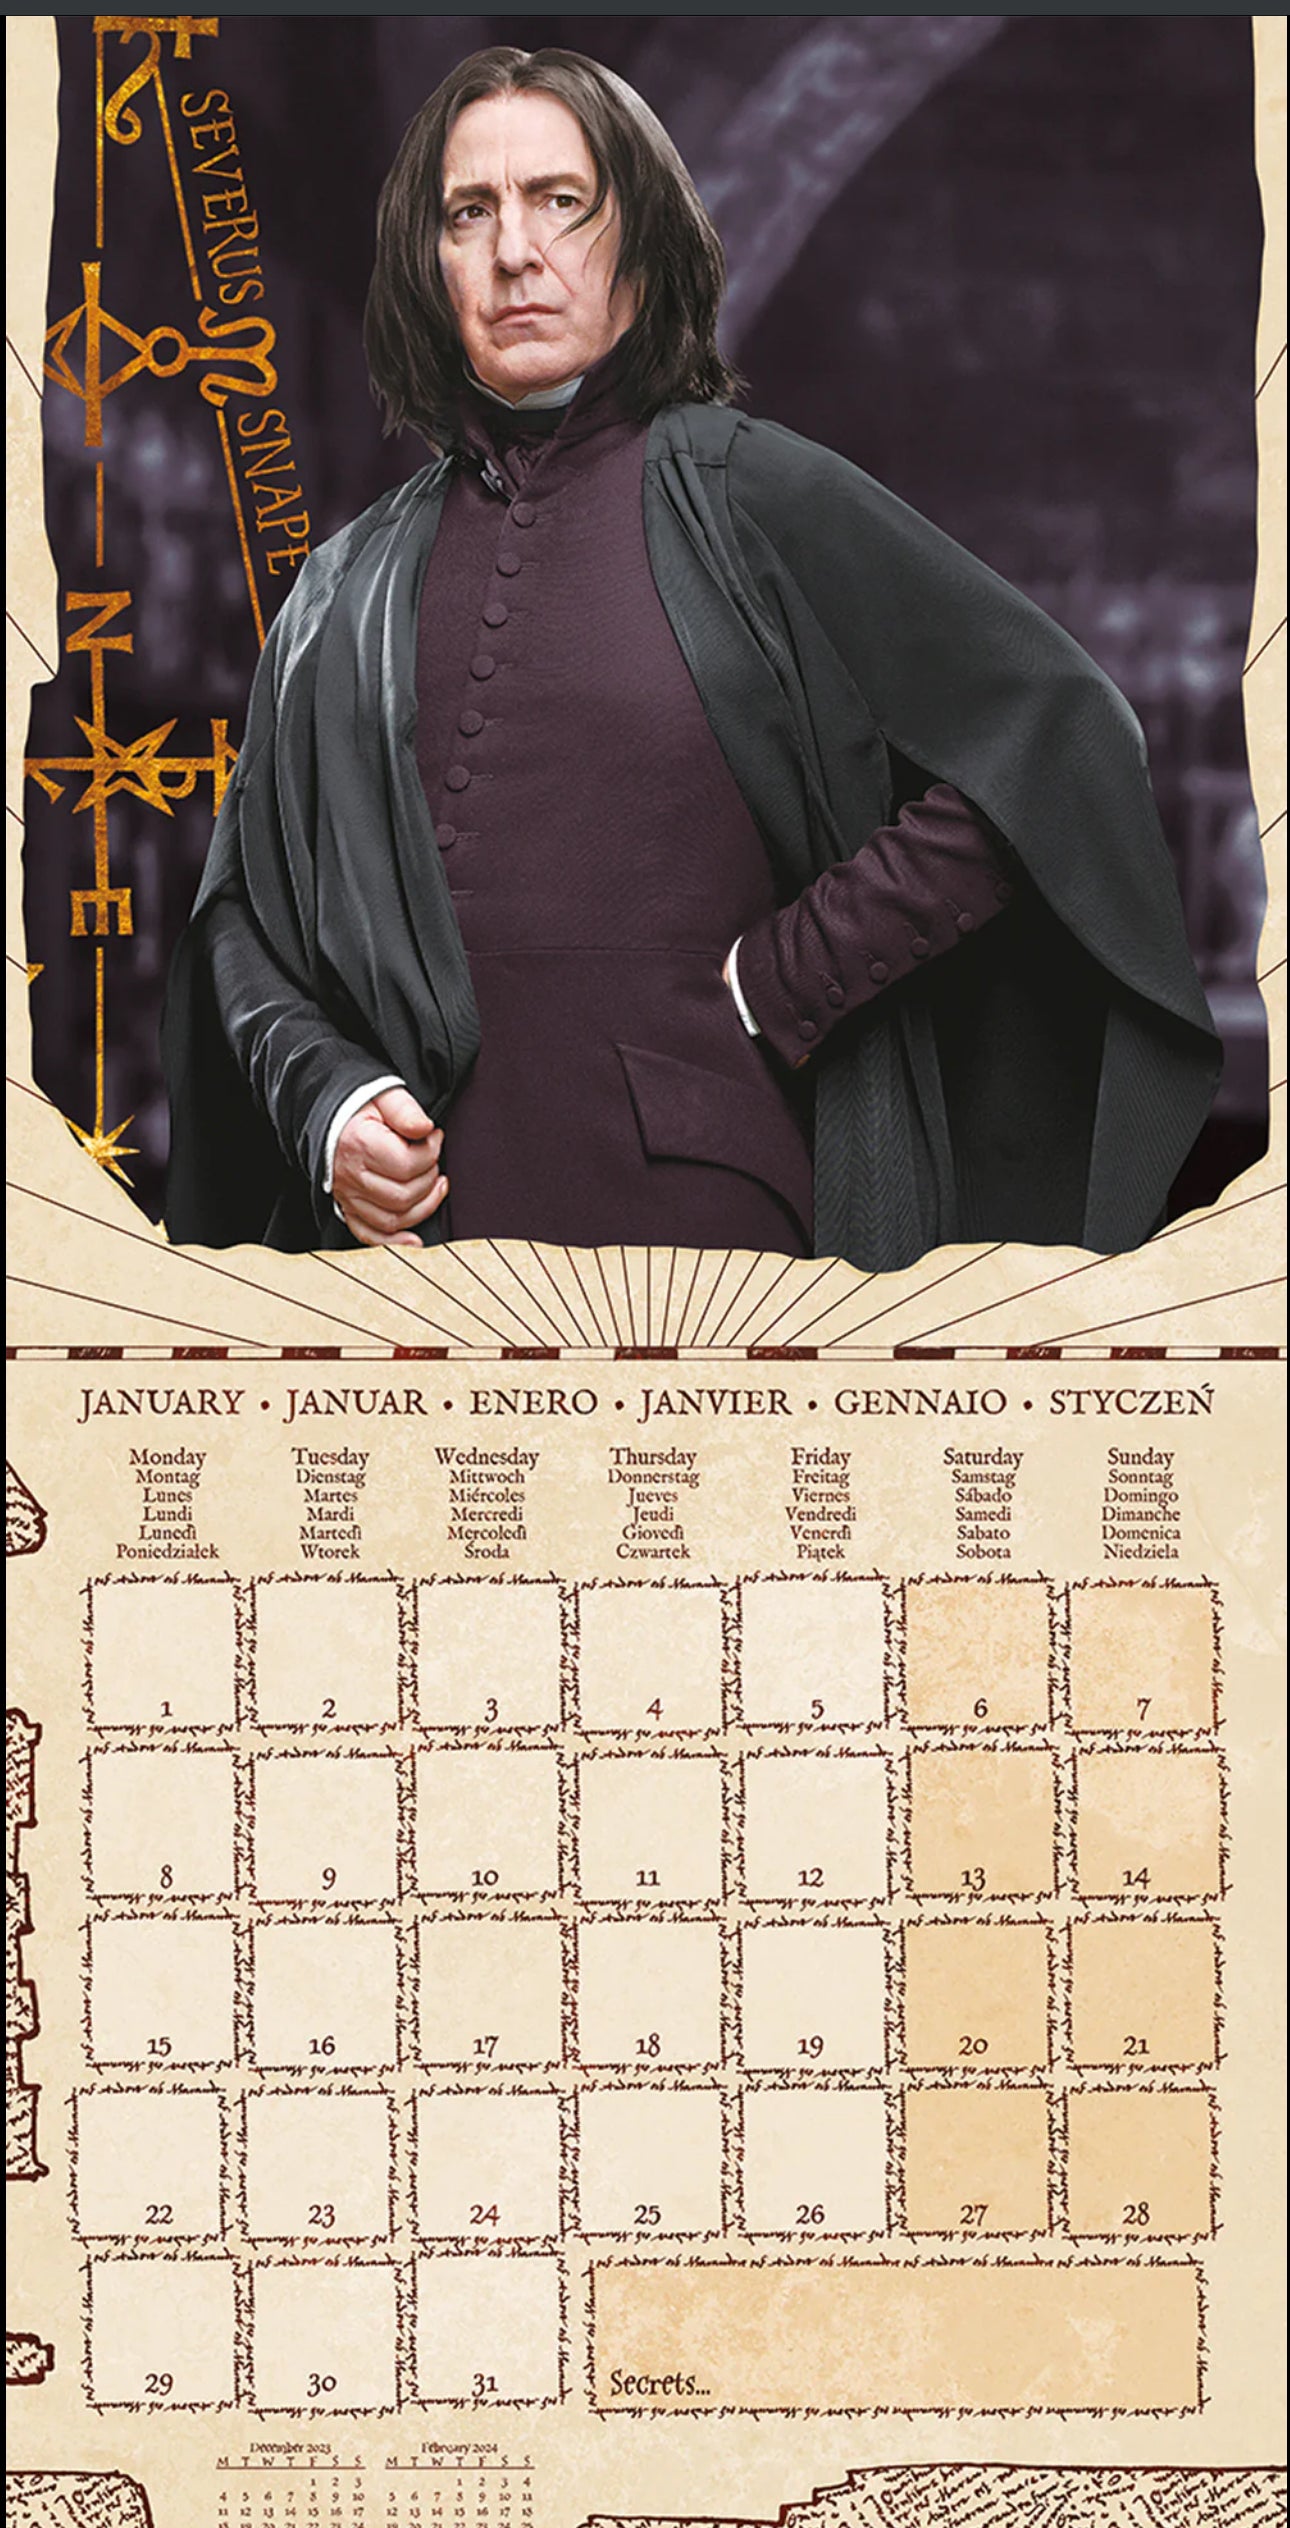 Calendario de Pared 2024 Harry Potter Magical Foundations